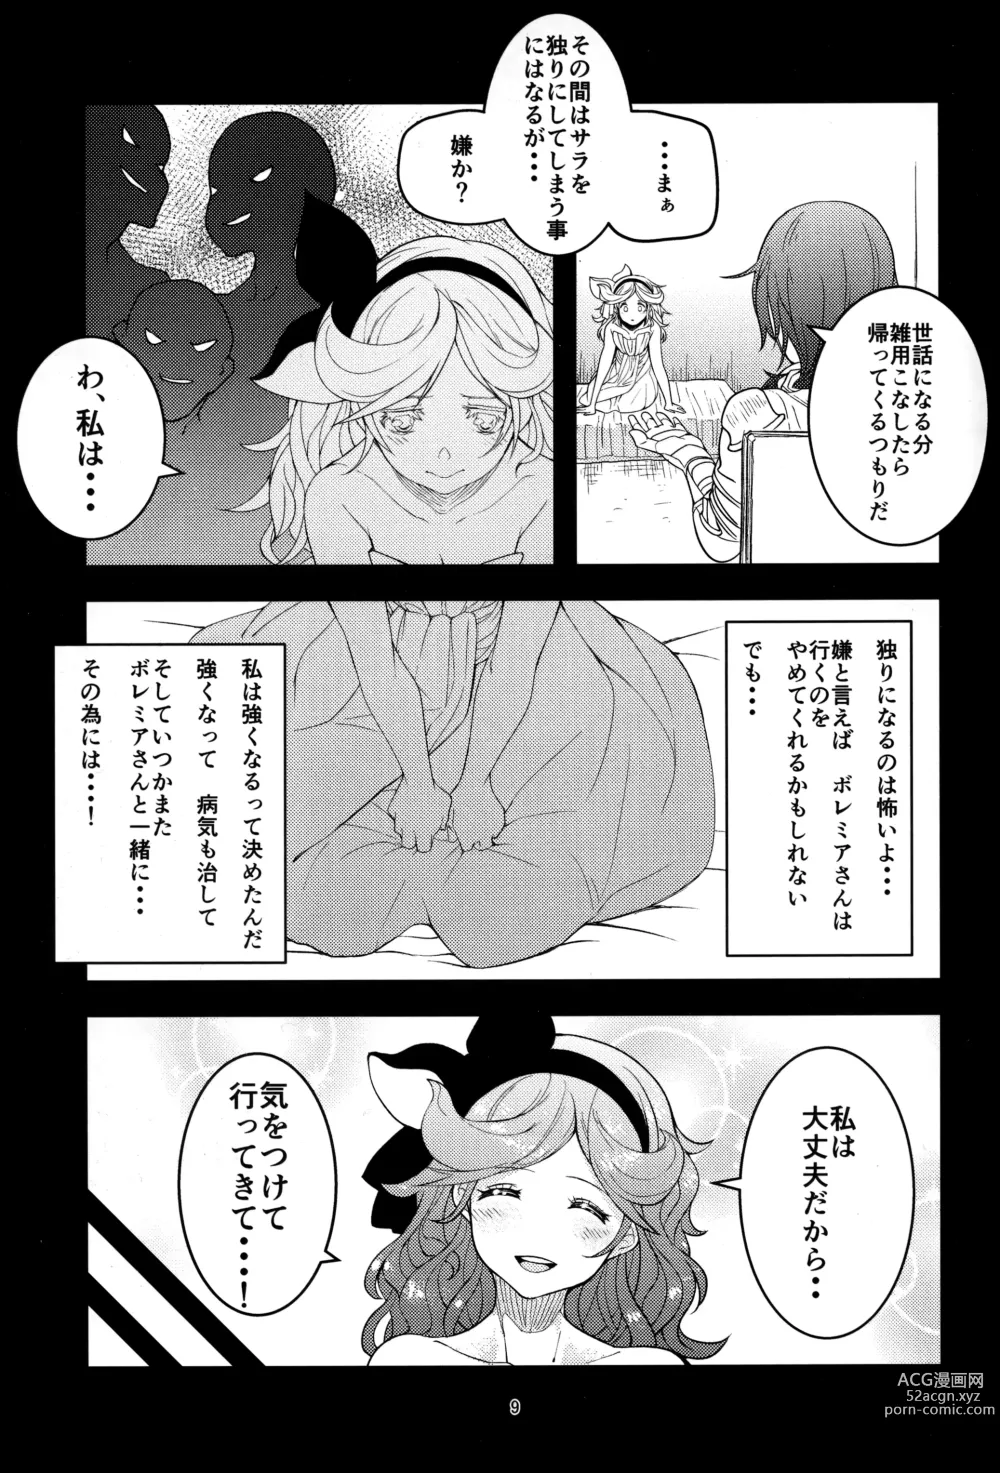 Page 8 of doujinshi Kowaku no Miko